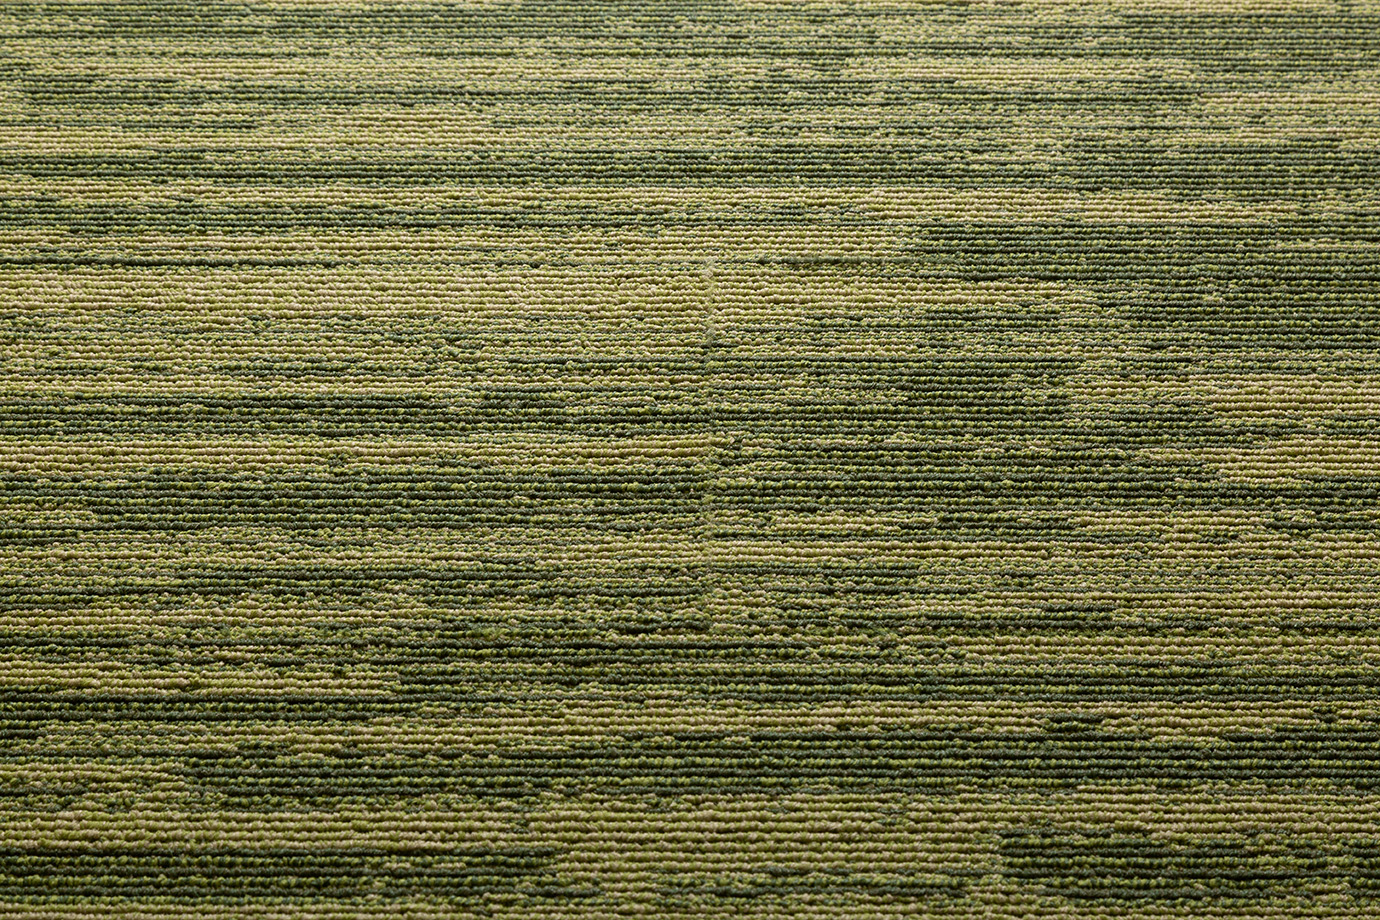 AB250-6 川島織物セルコン タイルカーペット モードスタイル シアトルプリーツ 川島織物セルコン タイルカーペット